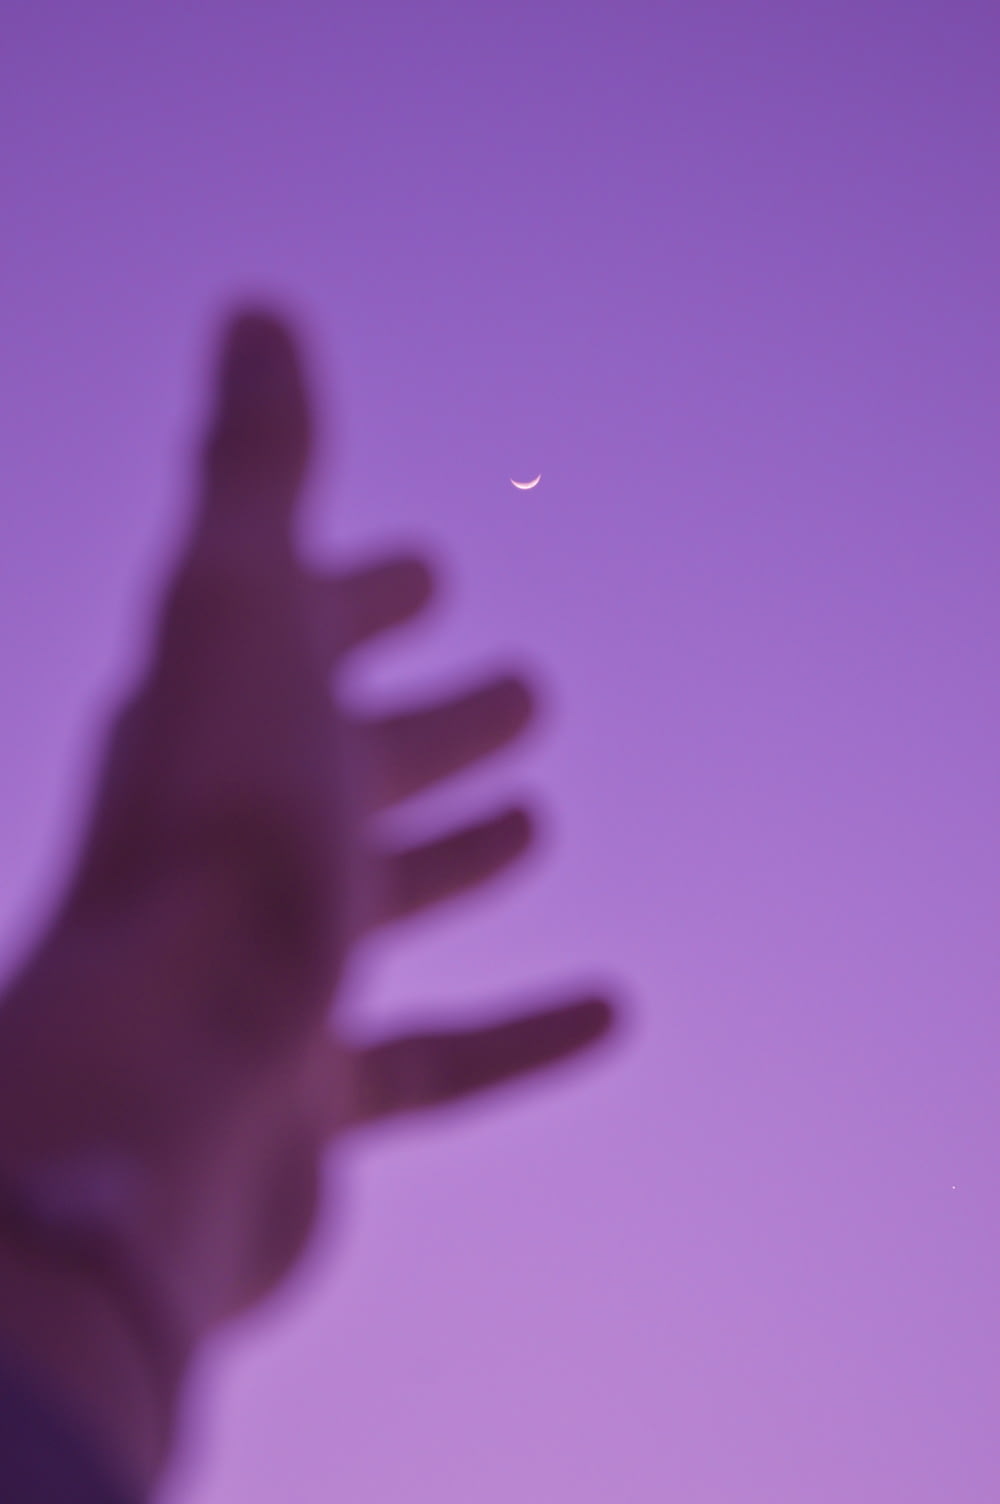 Una foto borrosa de la mano de una persona con una media luna en el